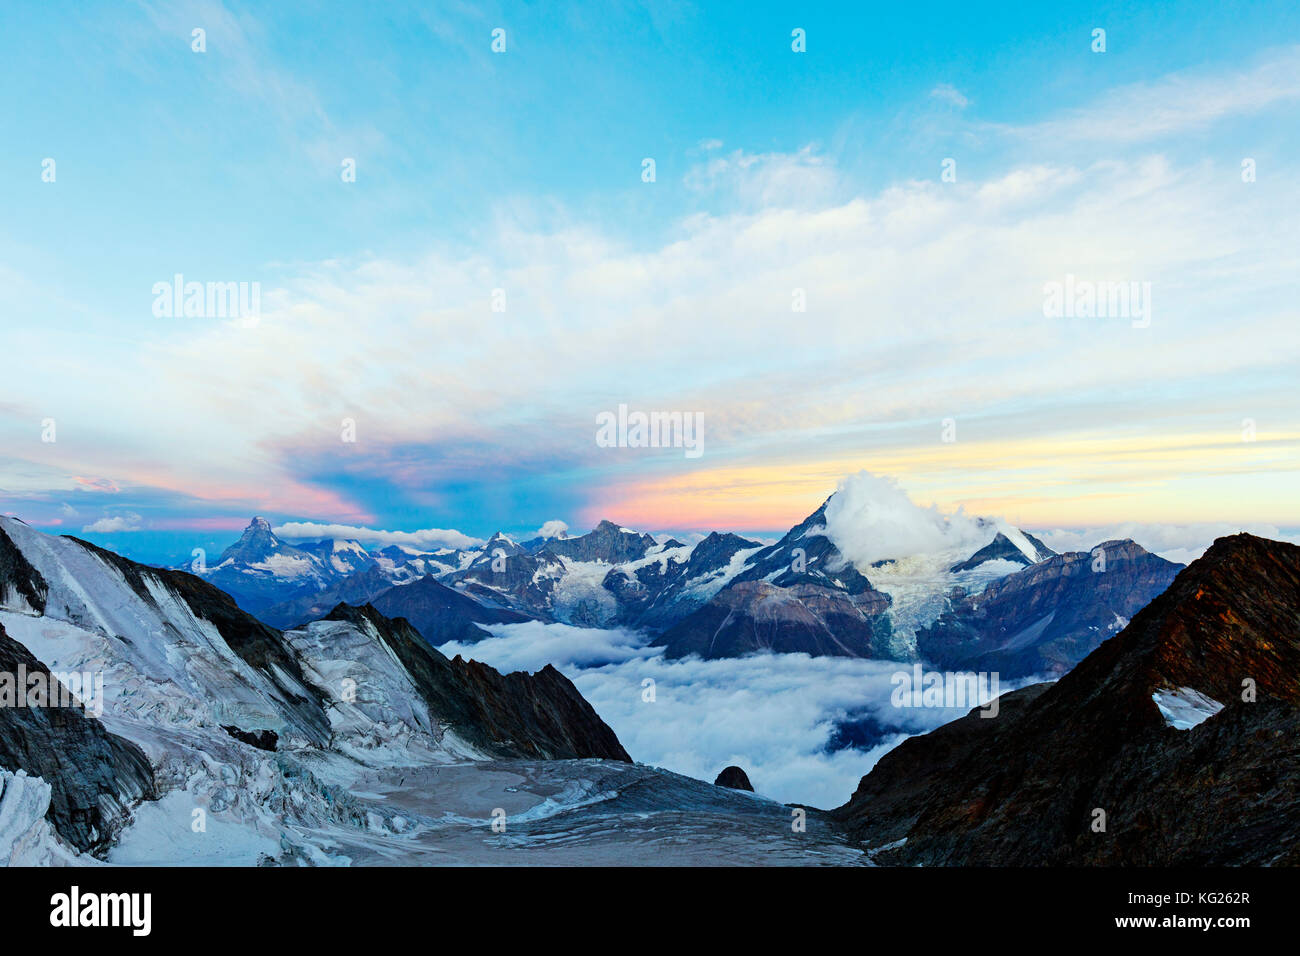 Le Mont Cervin, 4478m et 4506m, le Weisshorn, au lever du soleil, Zermatt, Valais, Alpes suisses, Suisse, Europe Banque D'Images